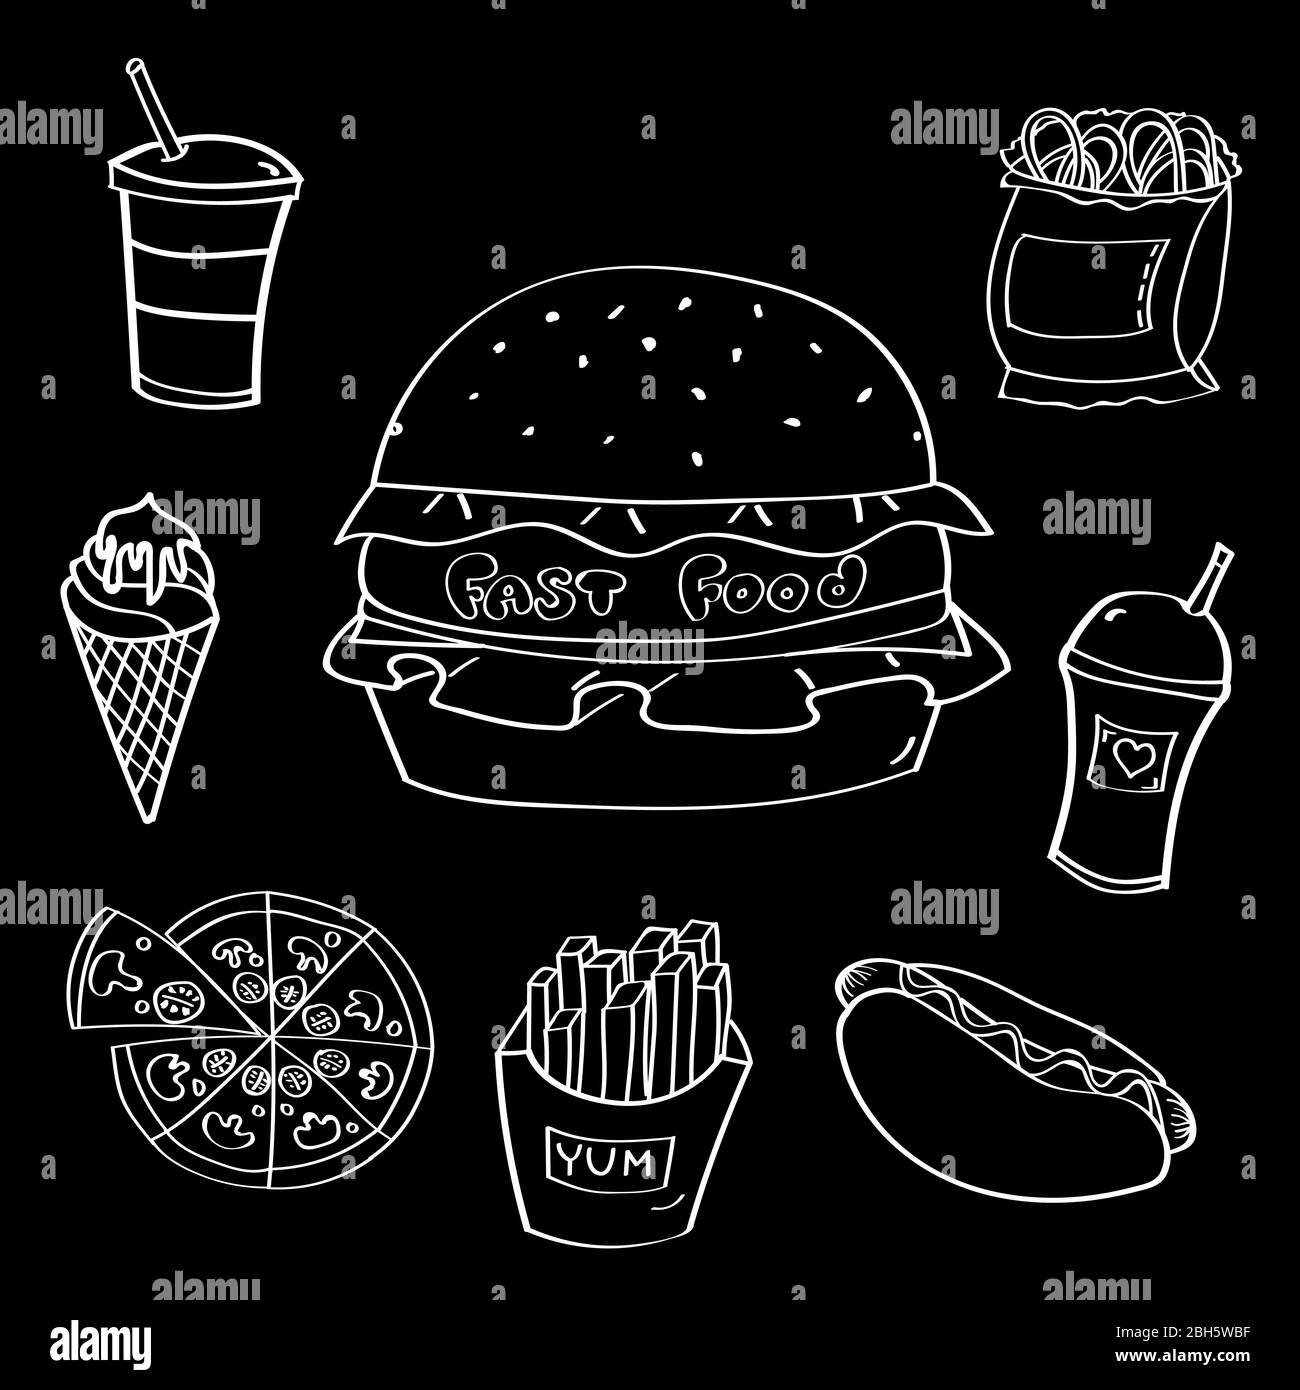 Fast food hamburger vector doodle set Stock Vector